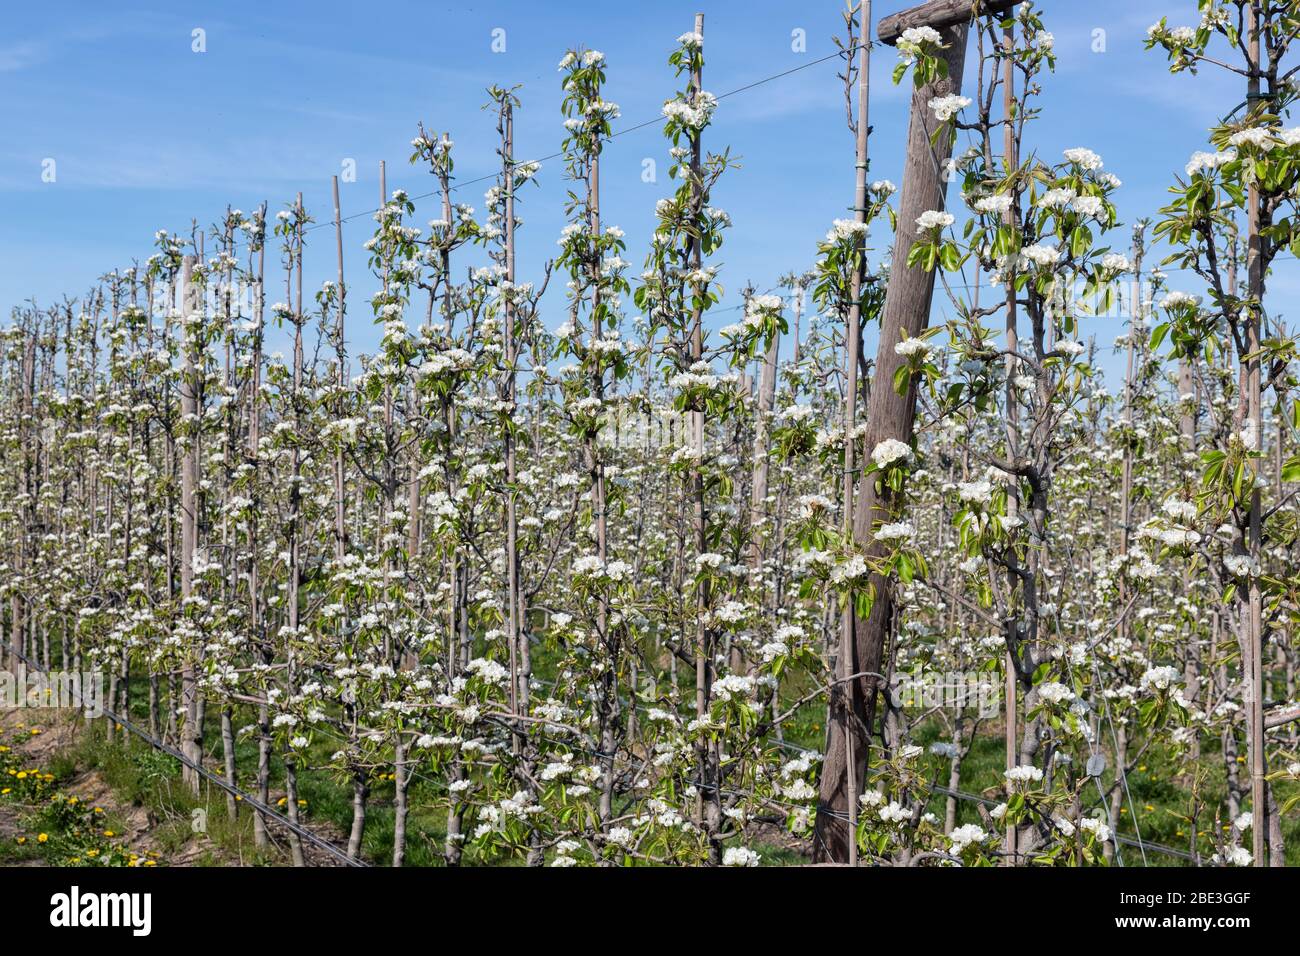 Frutteto di mele in primavera con filari di alberi in fiore Foto Stock